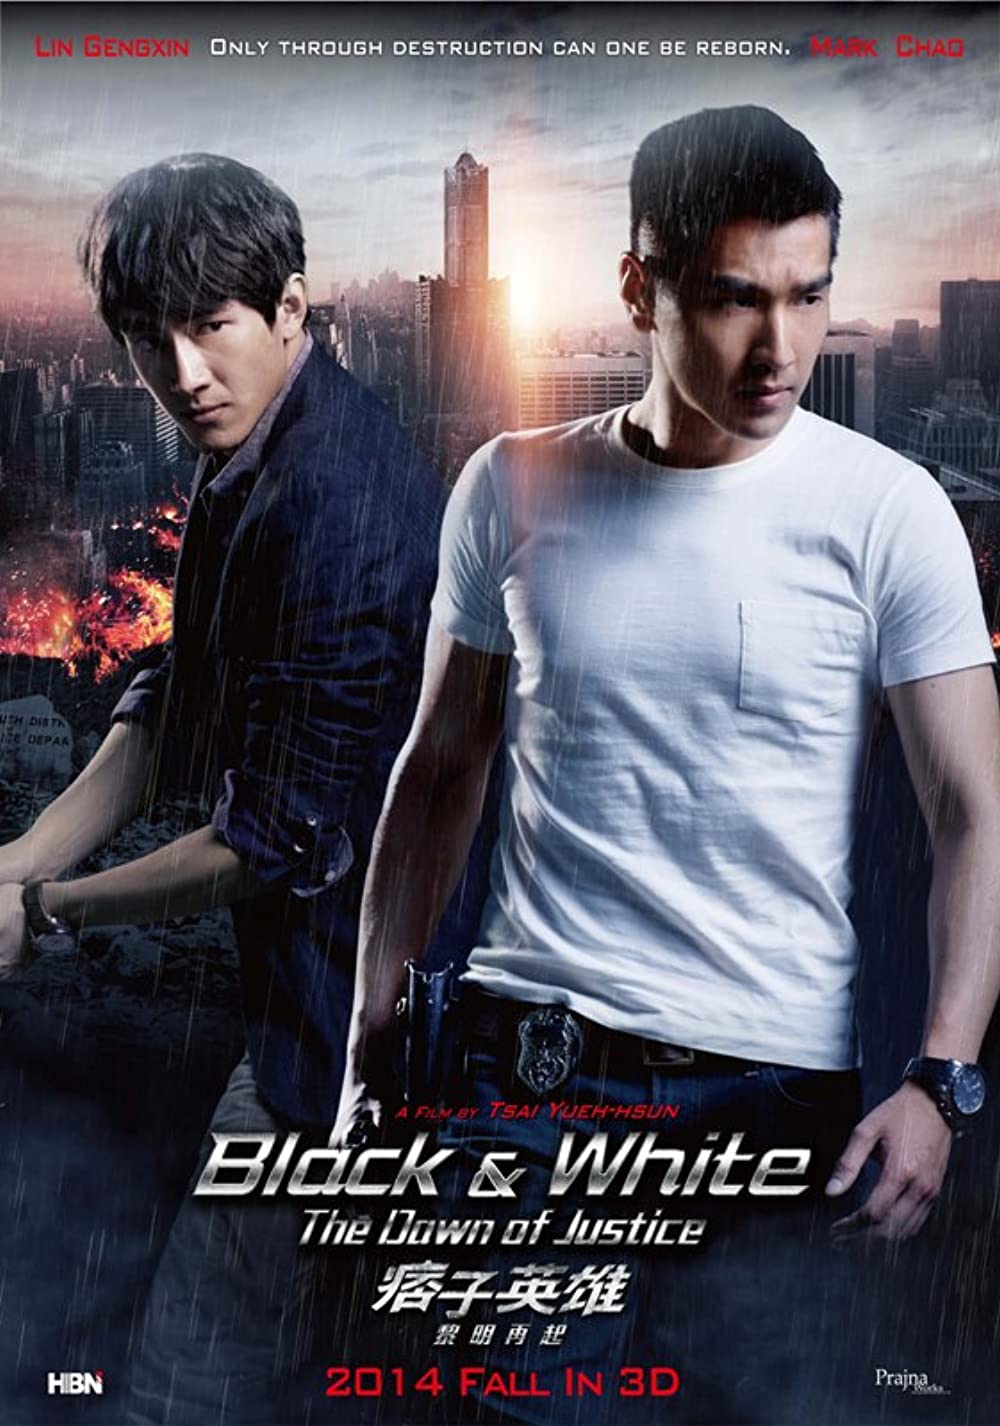 ดูหนังออนไลน์ Black & White The Dawn of Justice (2014) คู่หูมหาประลัย ไวรัสล้างโลก